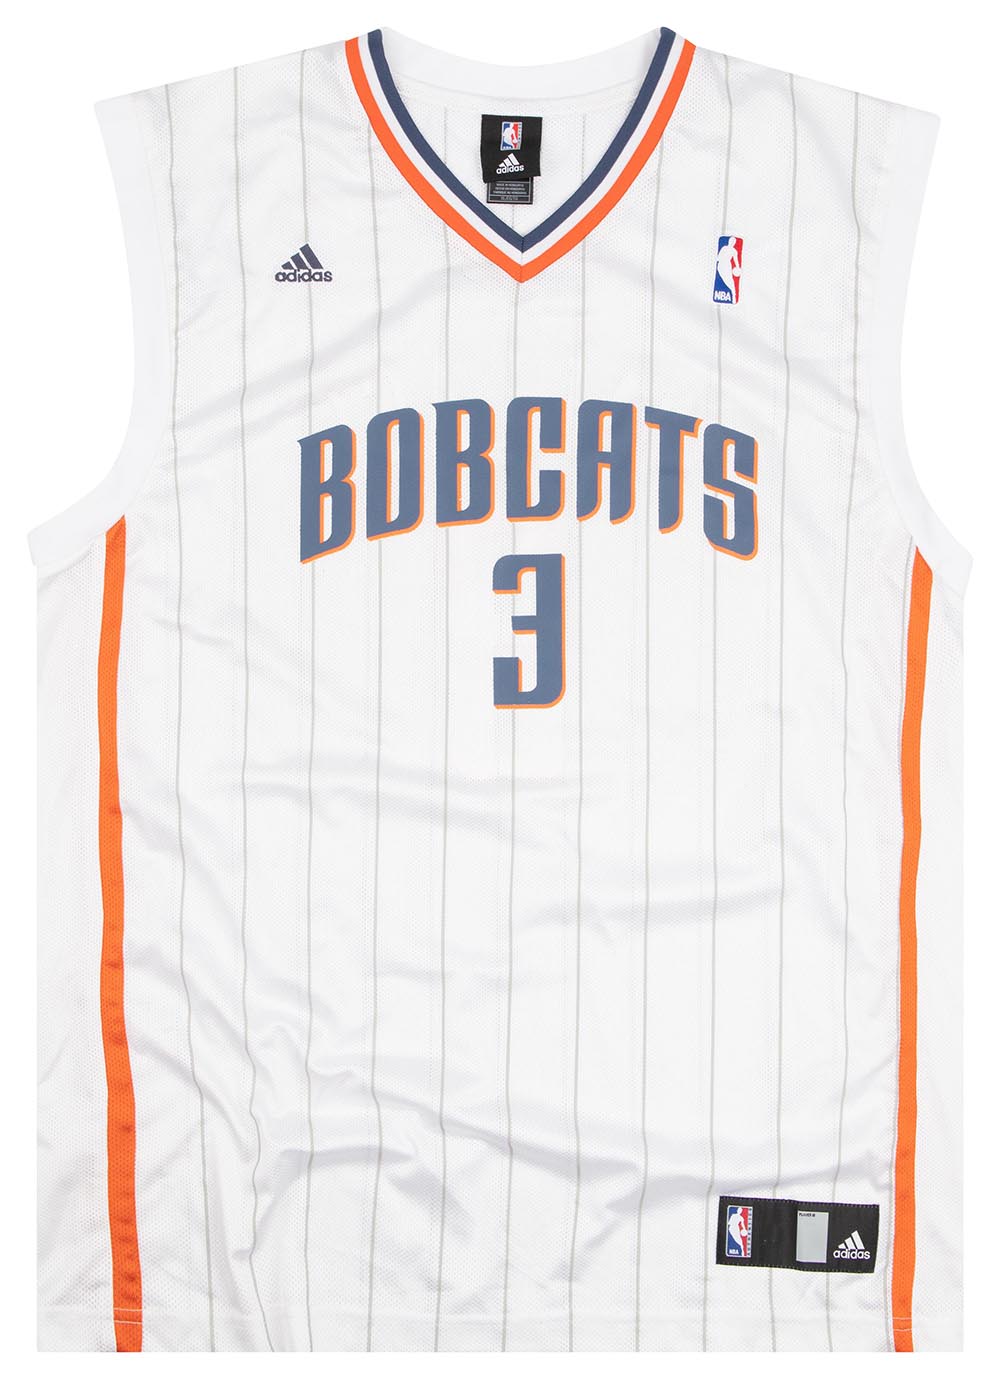 Adidas Charlotte Bobcats jersey